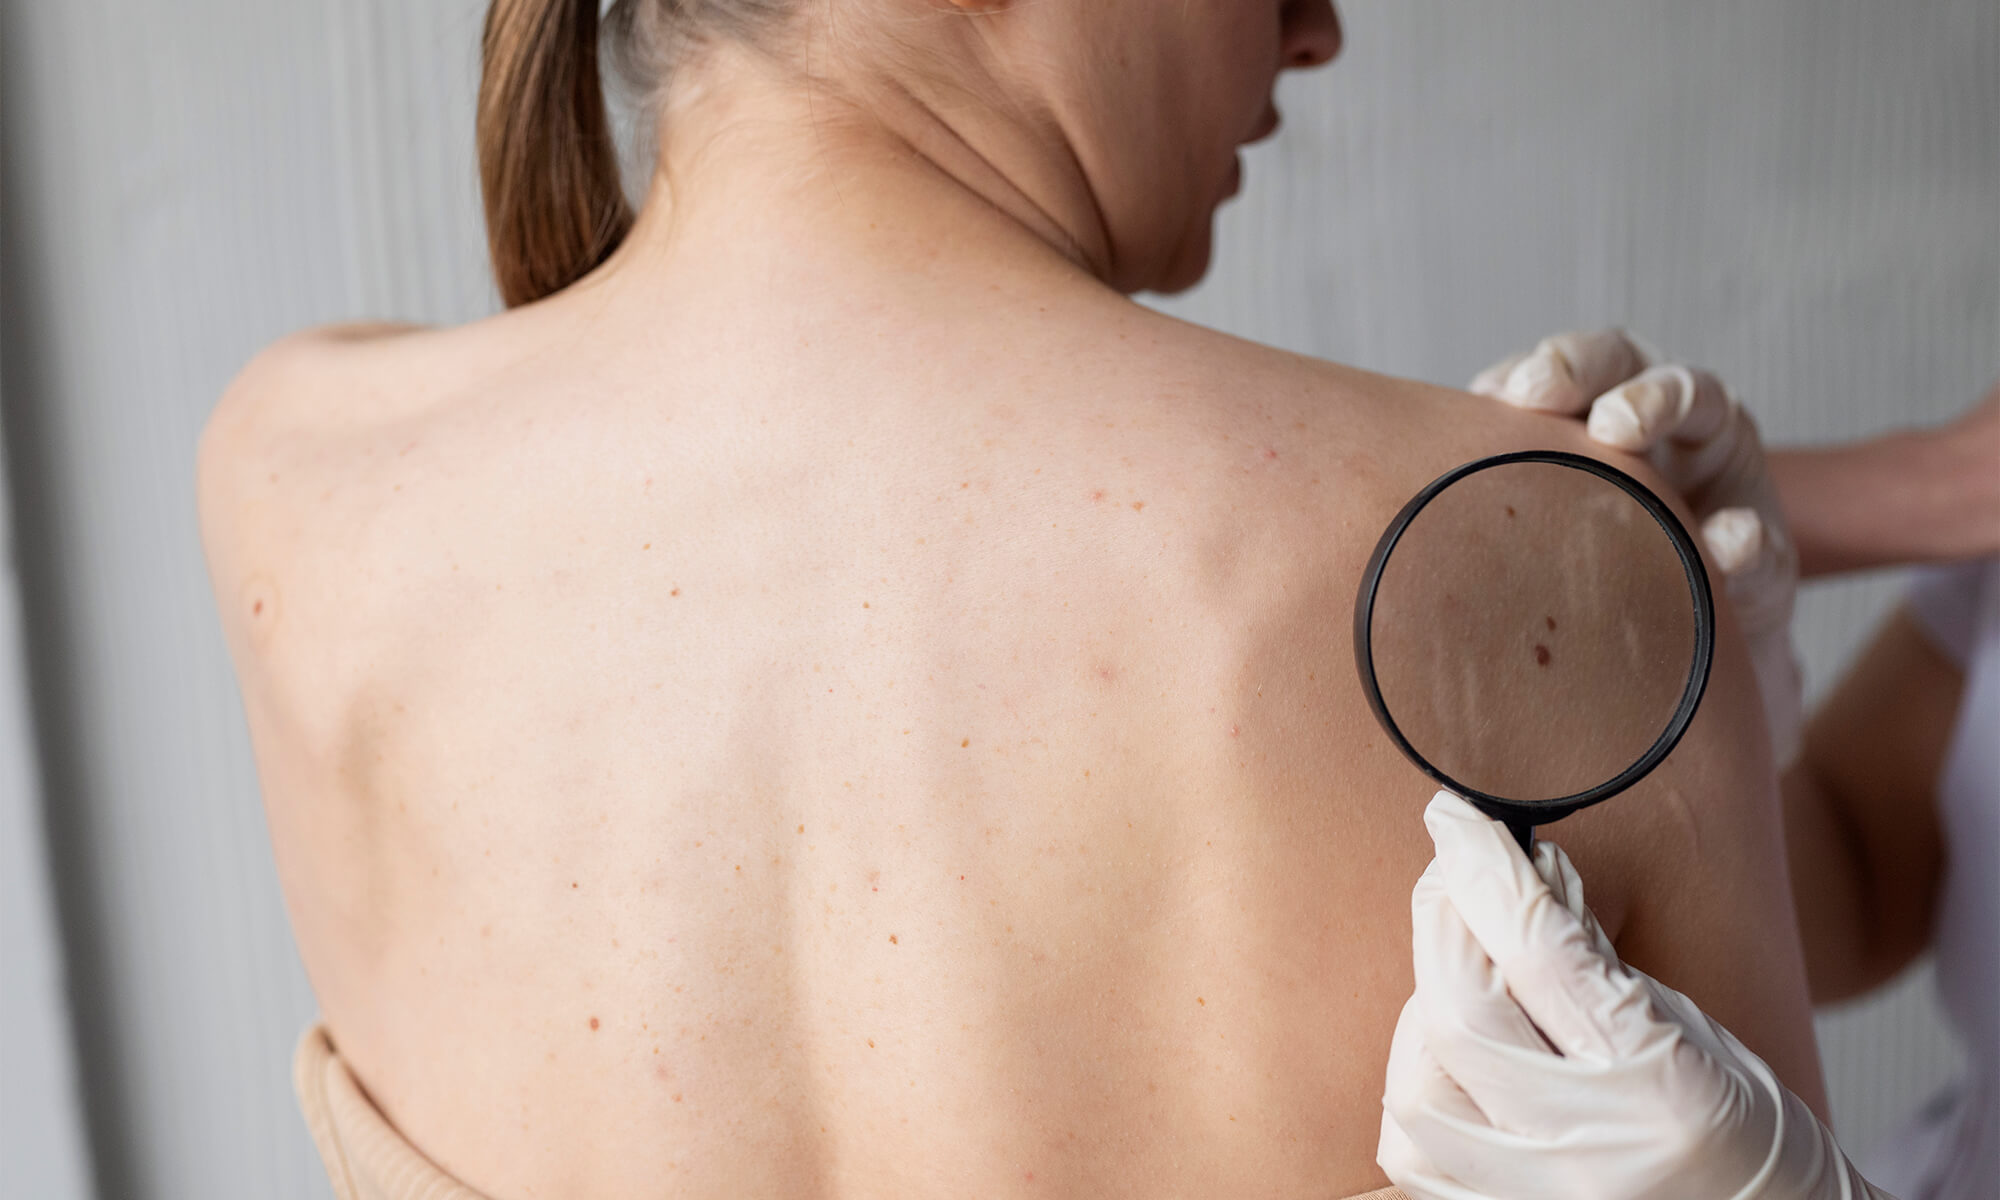 Cum faci prevenția pentru cancer de piele și care sunt riscurile